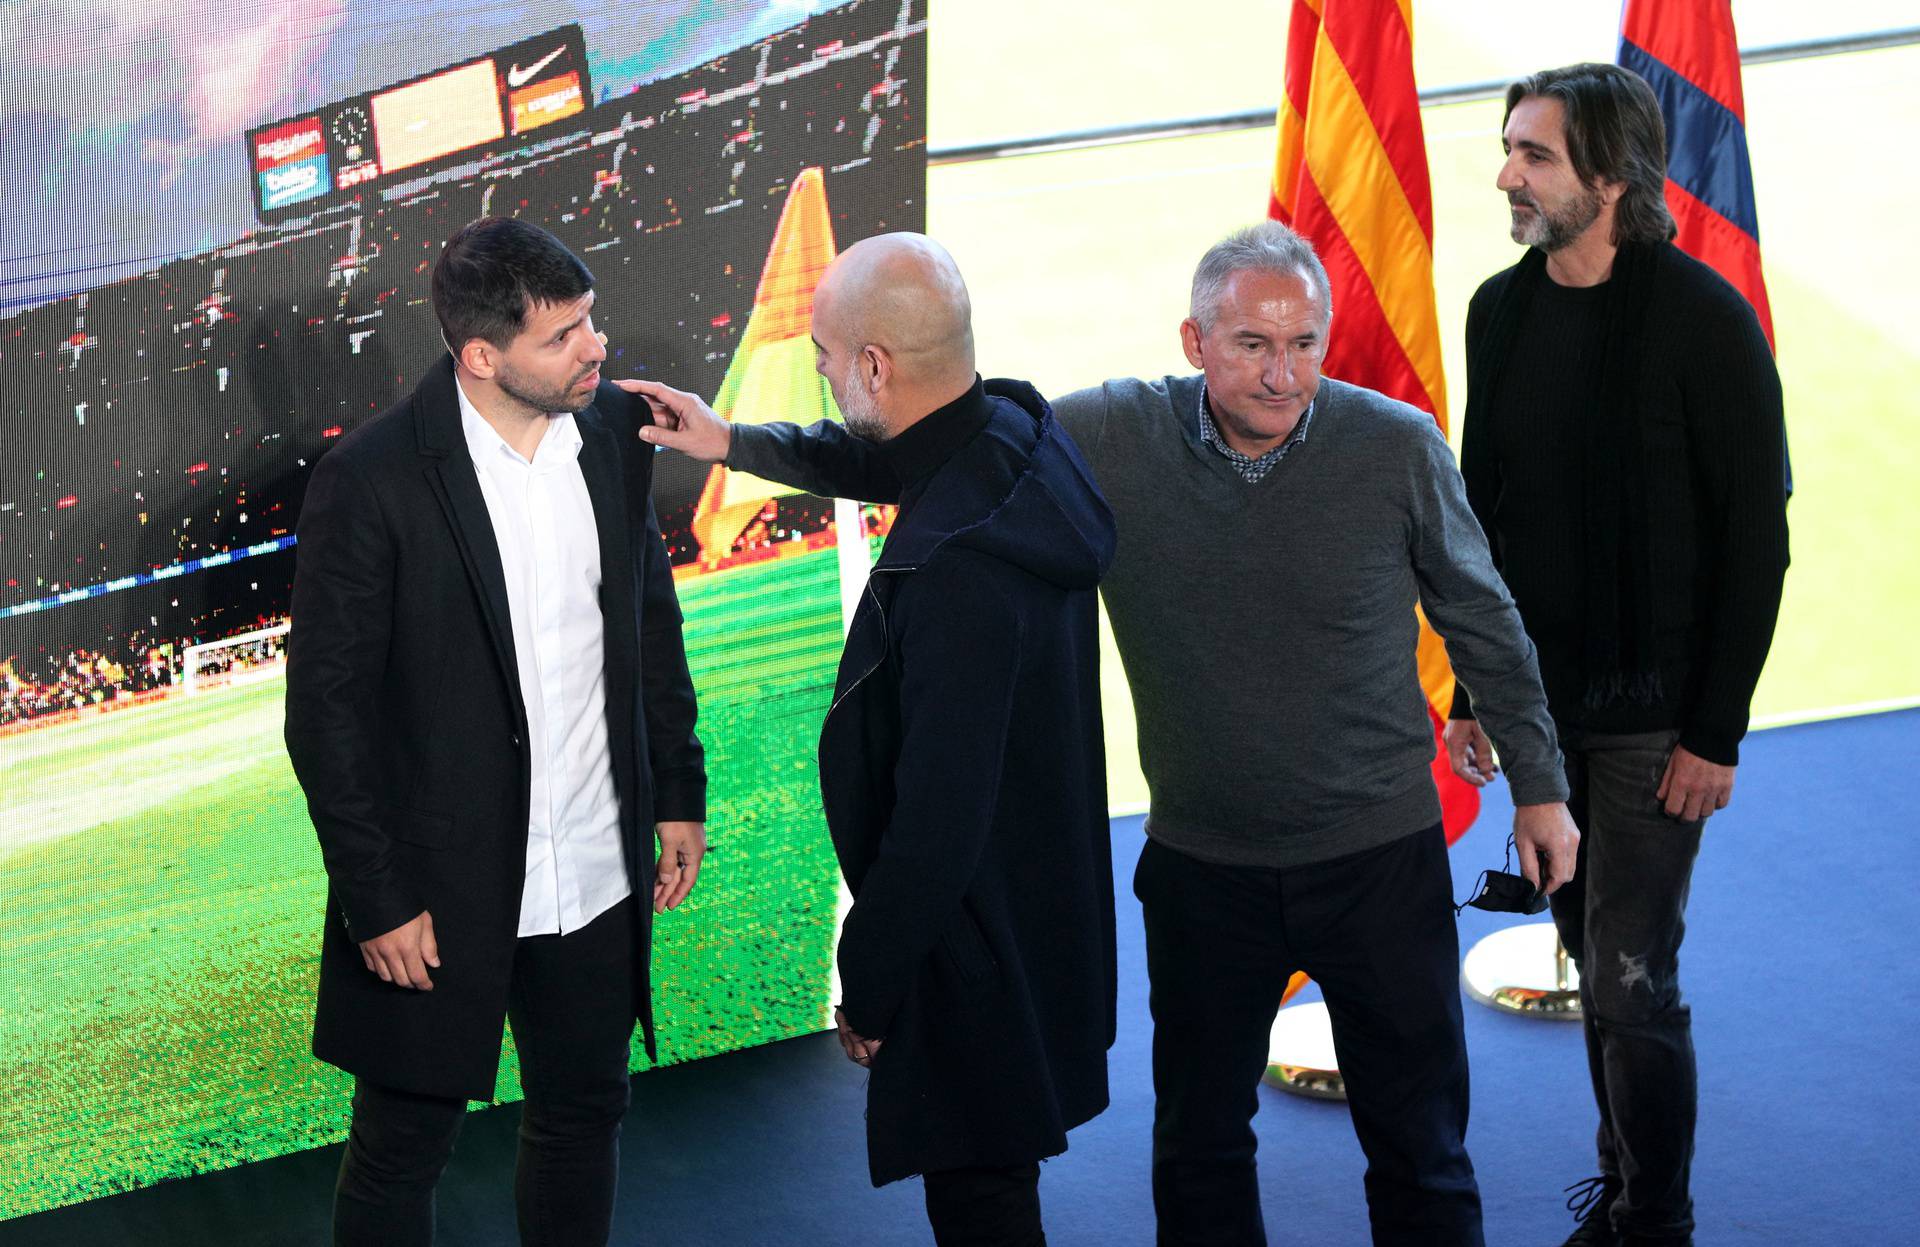 FC Barcelona - Sergio Aguero Press Conference